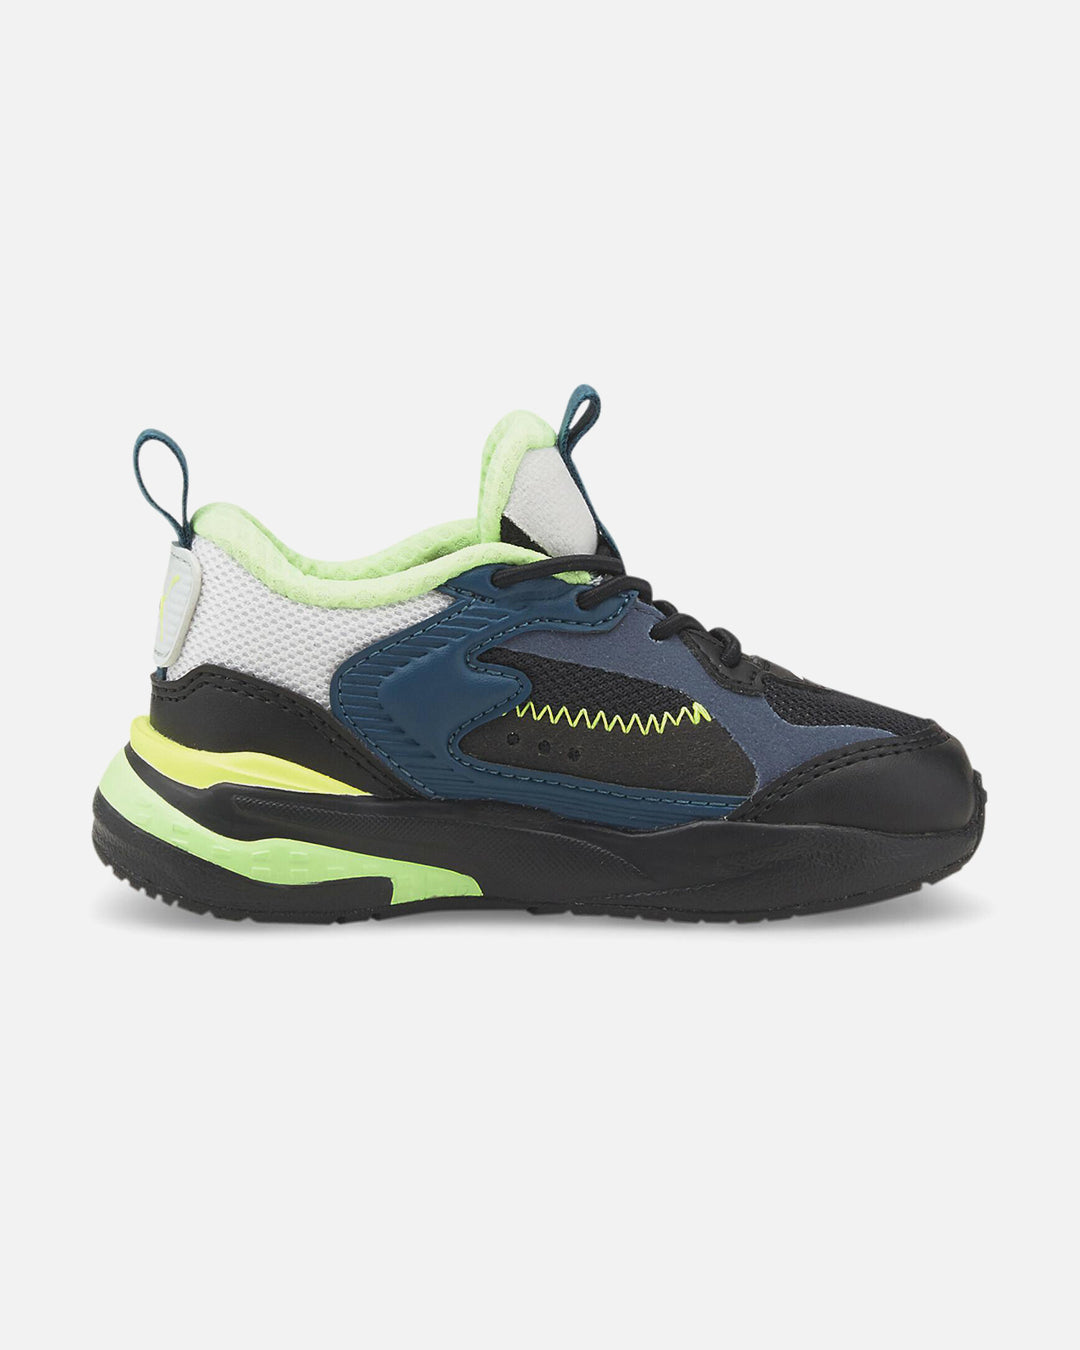 Chaussures Bebe Puma RS-FAST Limiter - Noir/Bleu/Vert